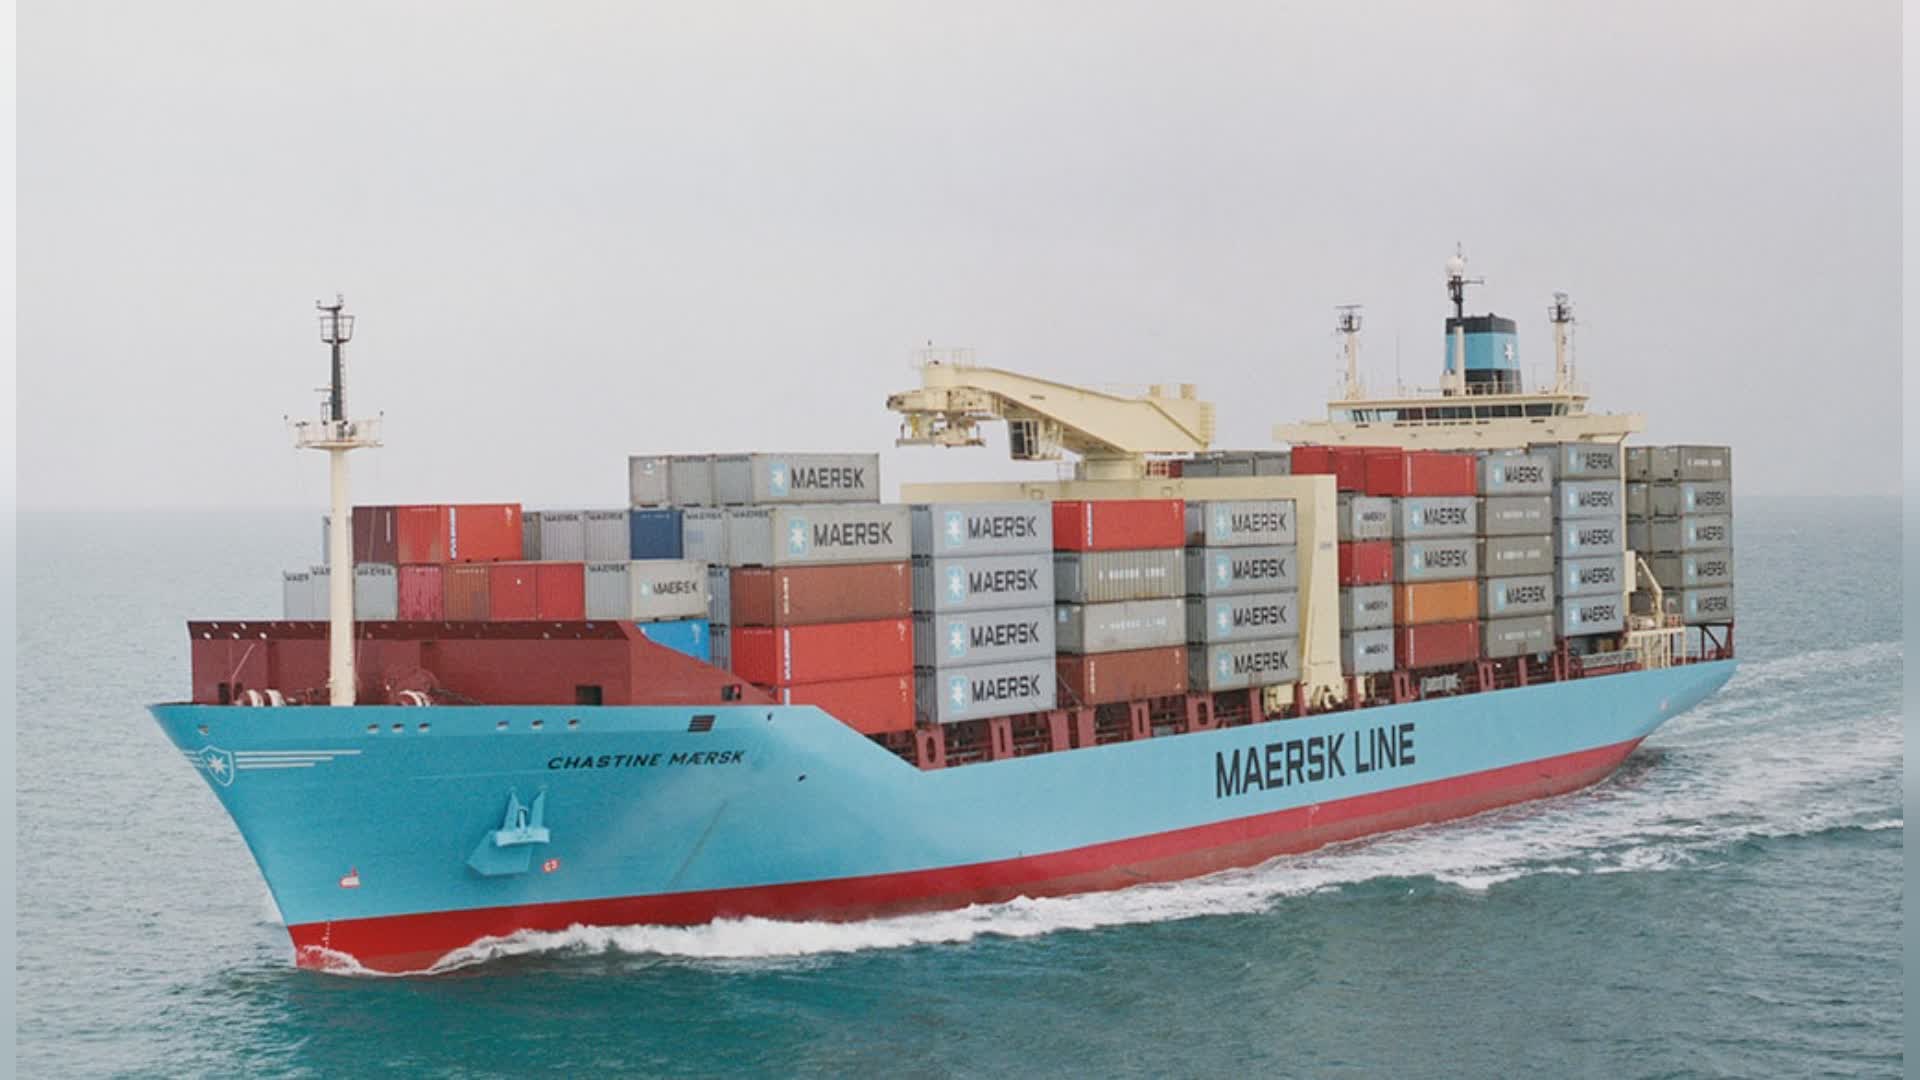 Maersk investimento in arrivo per più di 500 mln di dollari, in capacità di catena di fornitura integrata nel sud-est asiatico